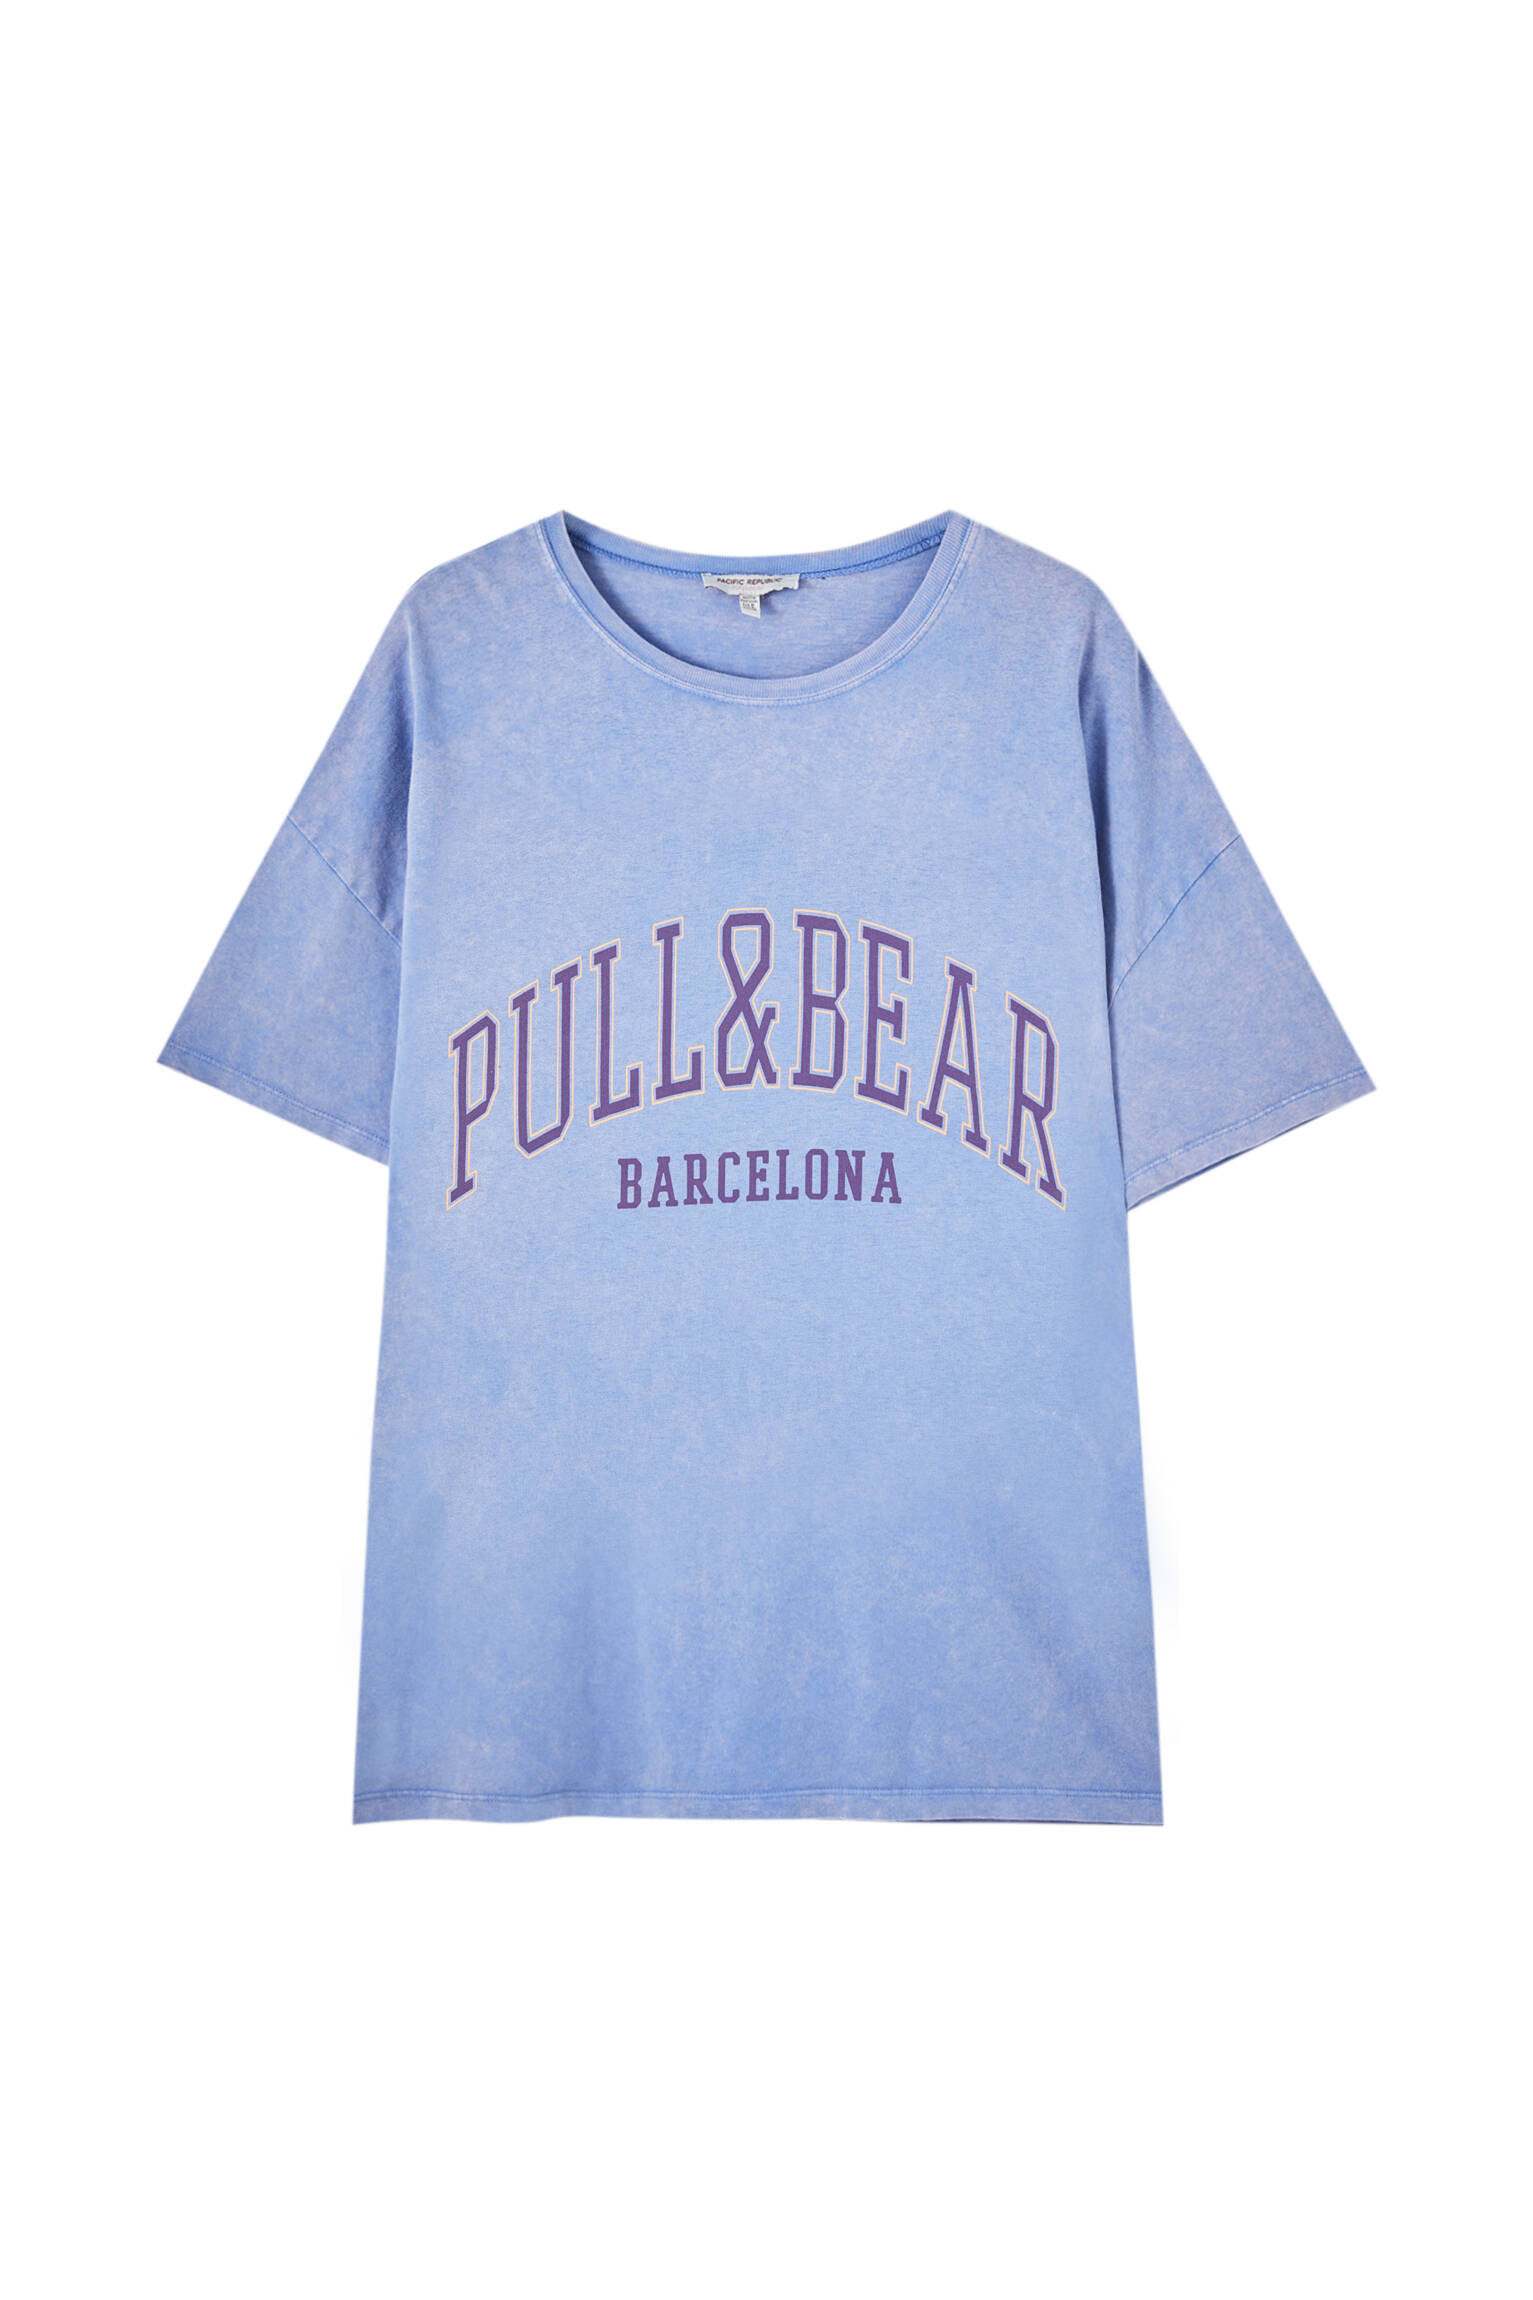 Pull&bear Femme T-shirt 100 % Coton à Col Rond Et Manches Courtes, Avec Logo Pull&bear Et Inscription Barcelona Contrastante Sur La Poitrine. Indigo DÉlavÉ S